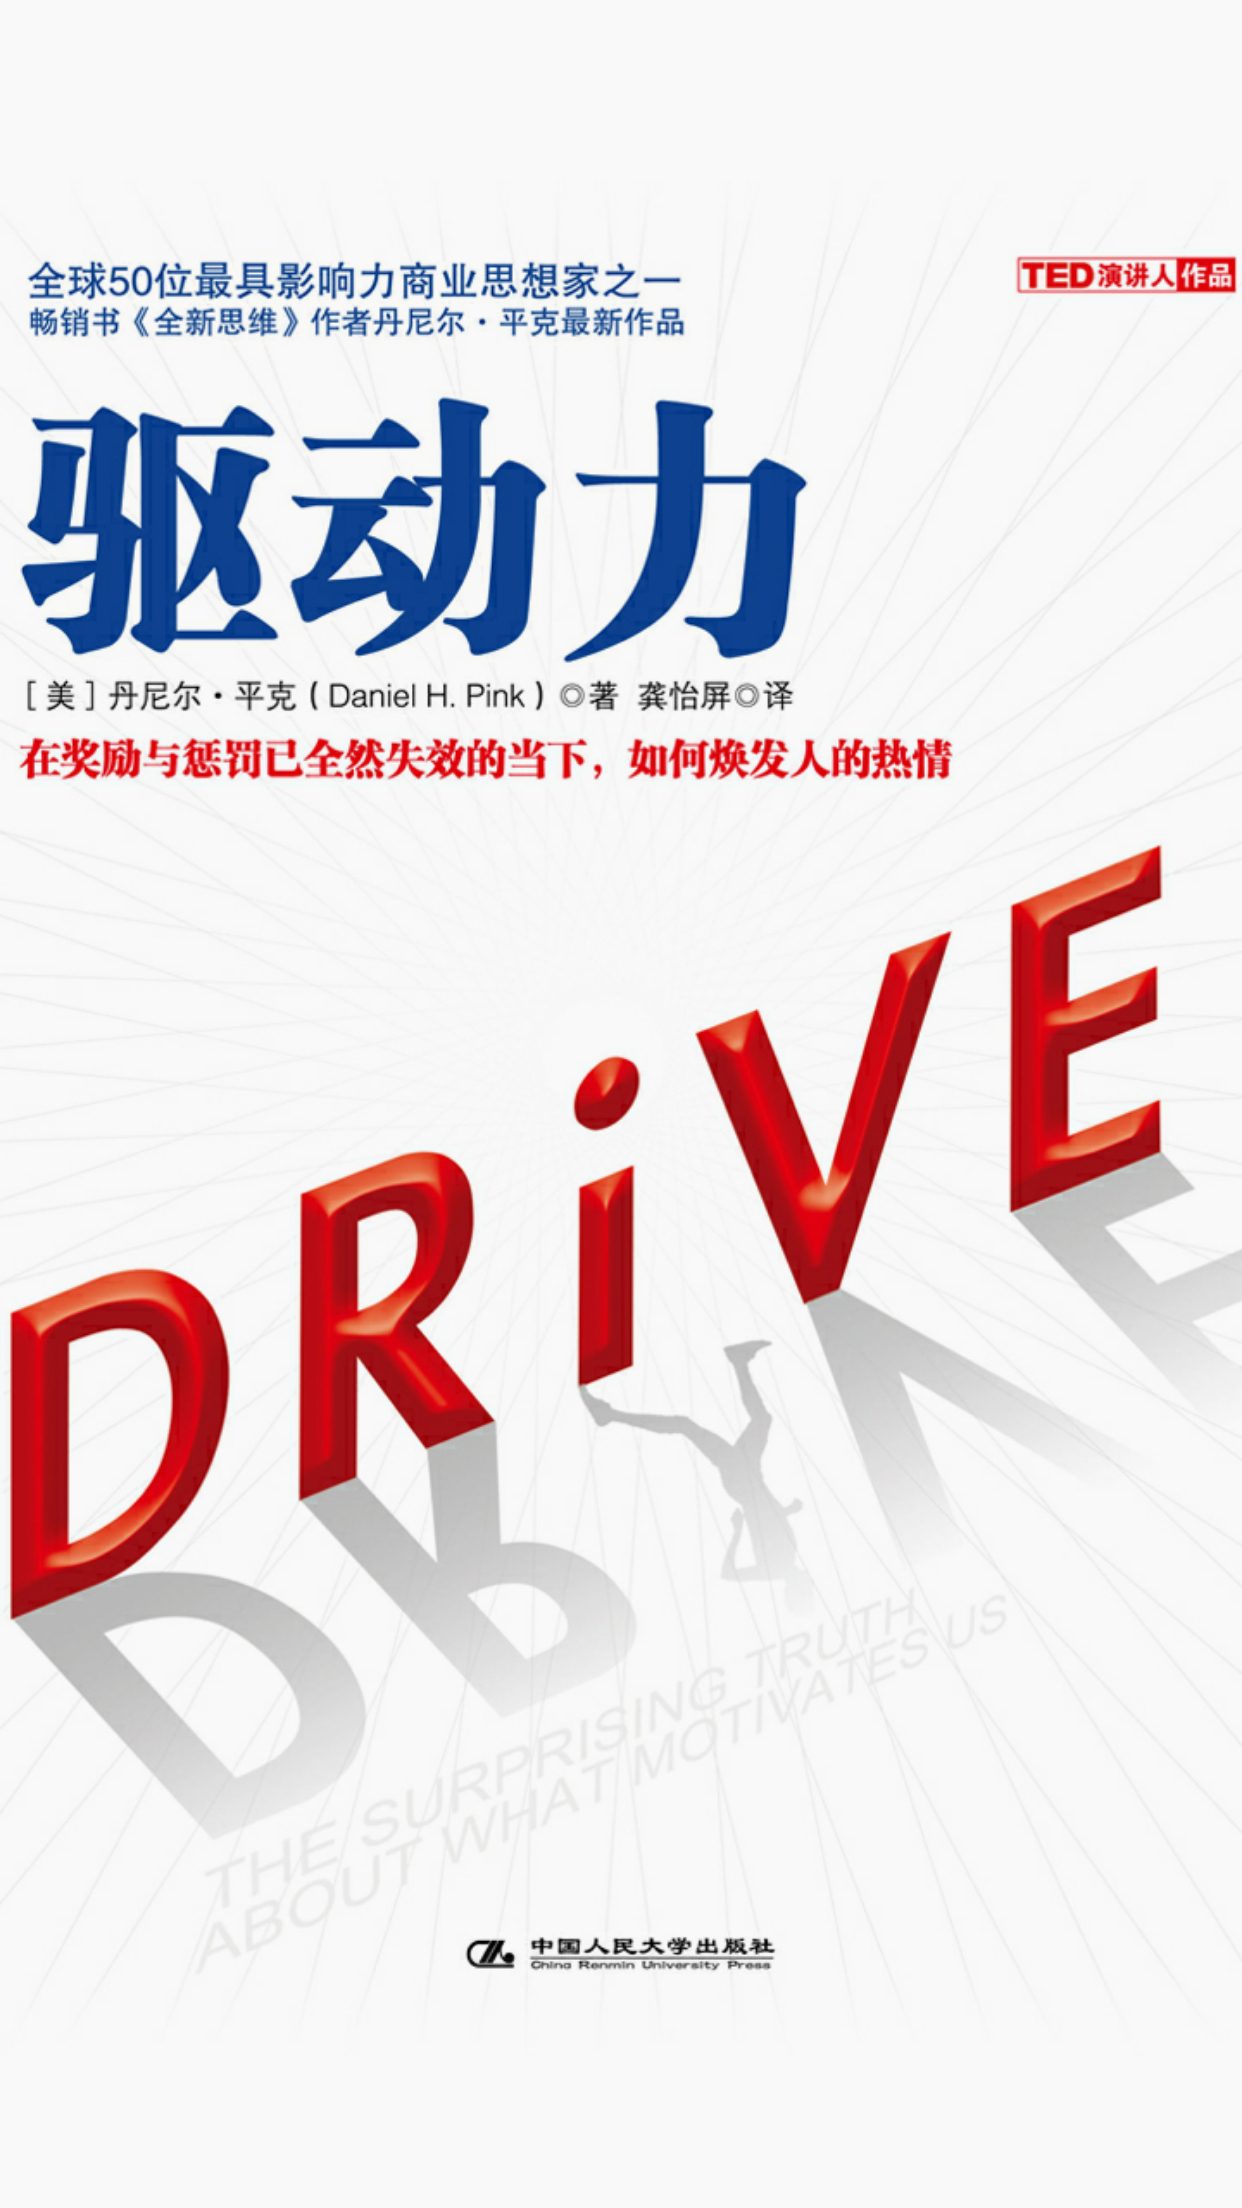 驱动力-drive-多看阅读